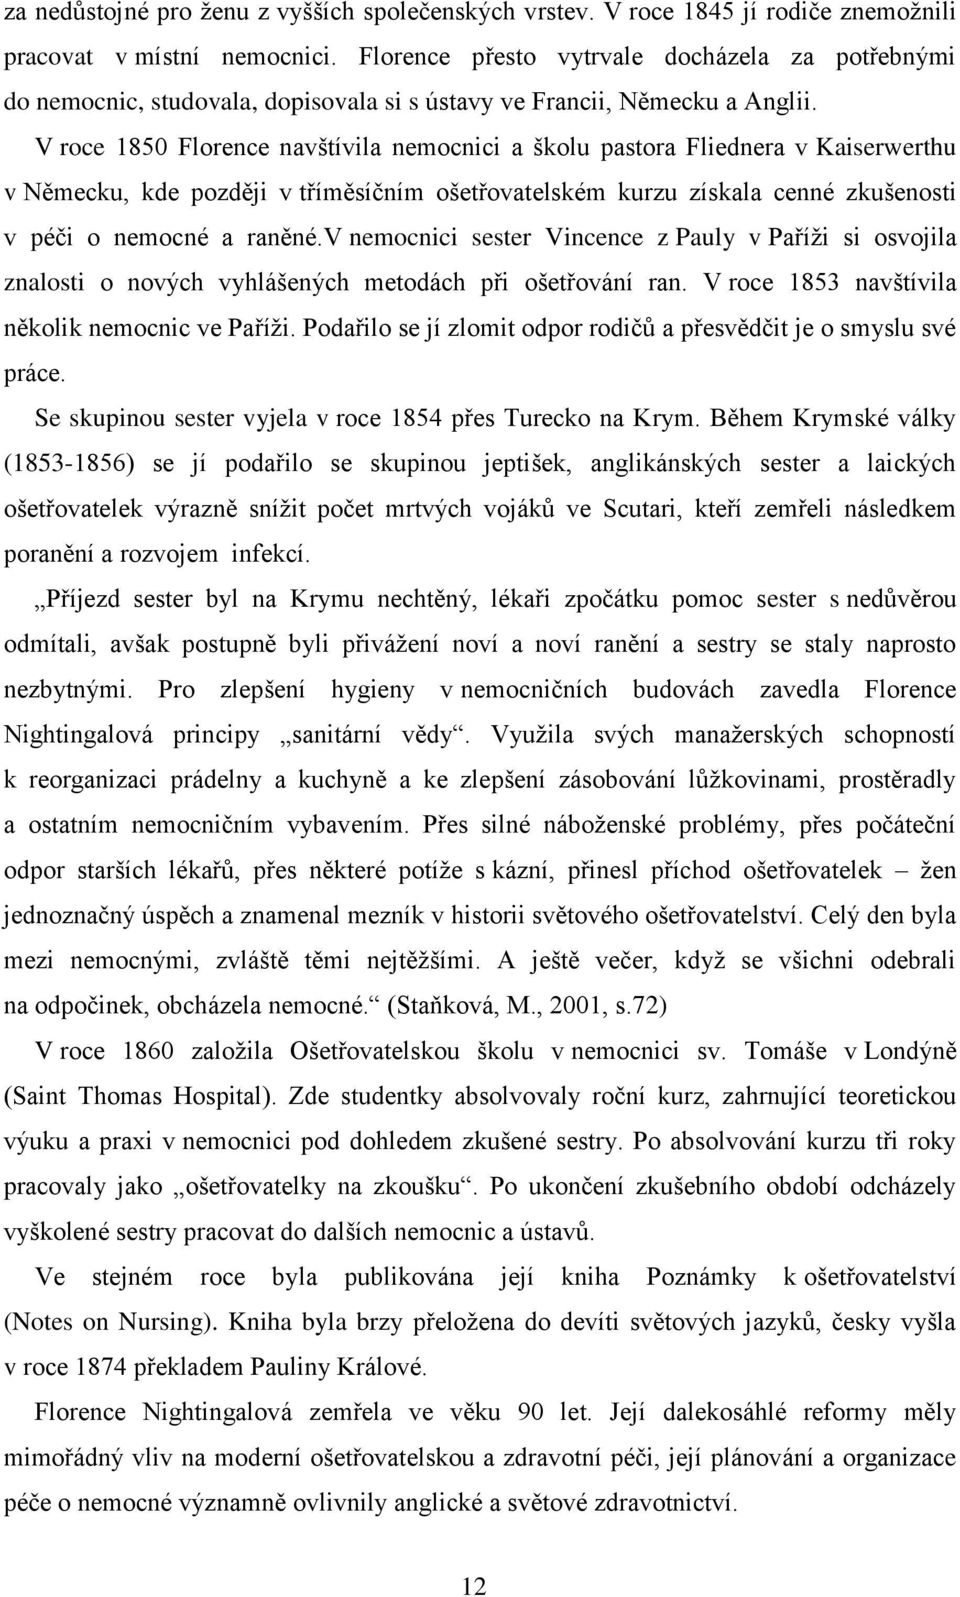 Historie ošetřovatelské profese na Mladoboleslavsku - PDF Free Download